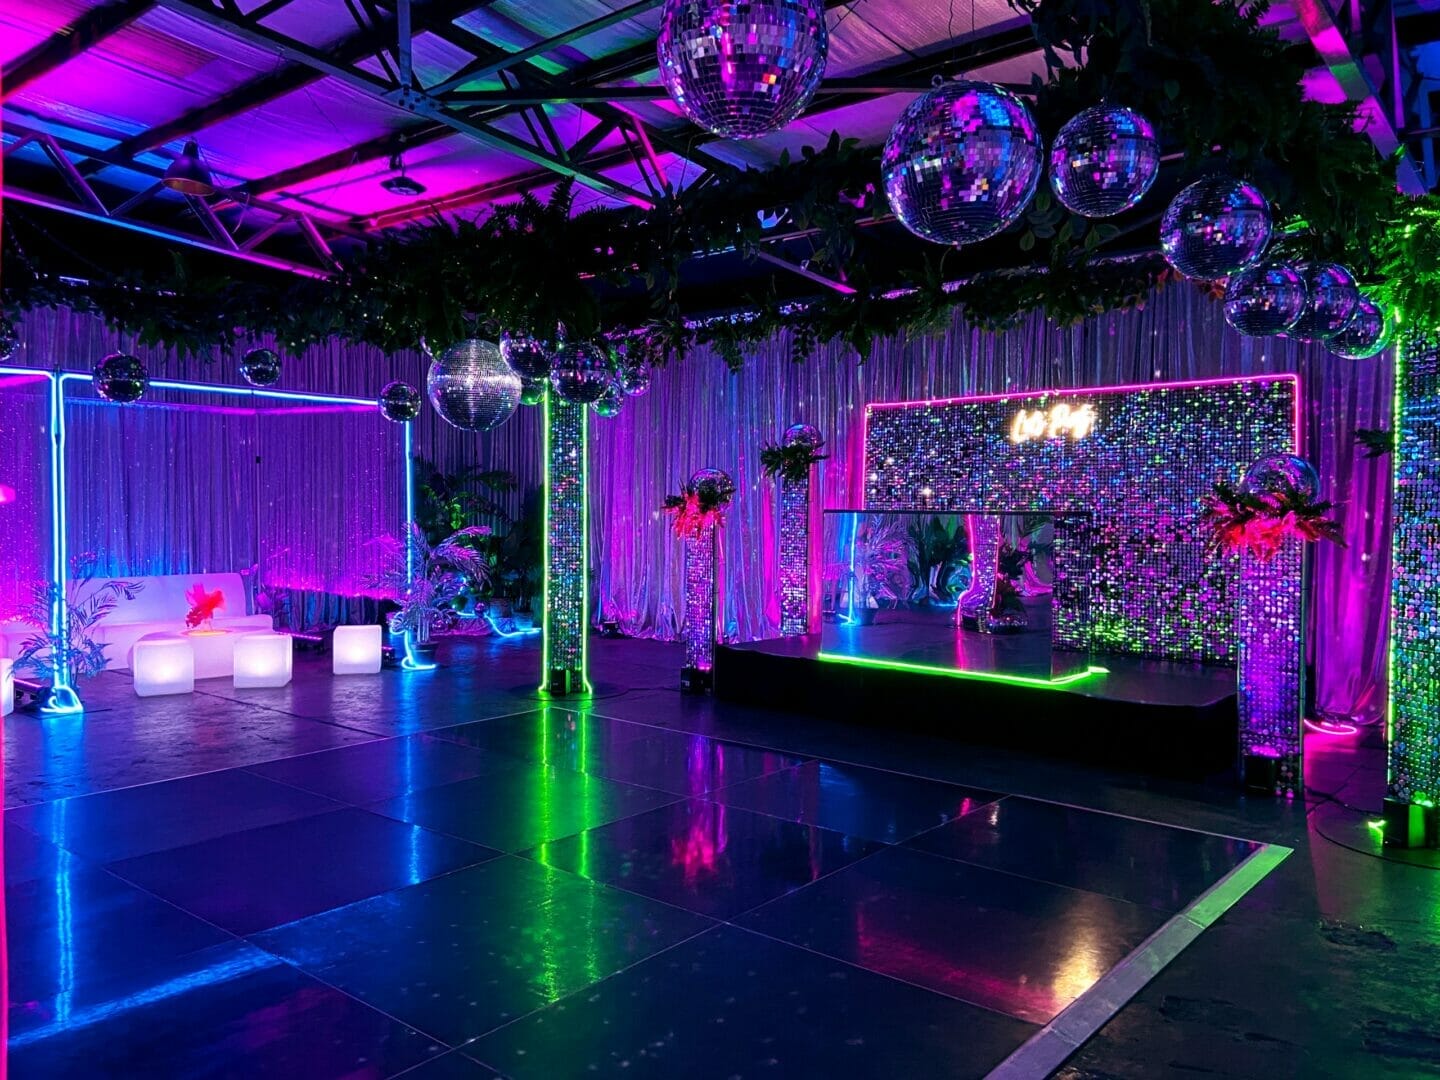 dance floor area with mirror balls and neon lights